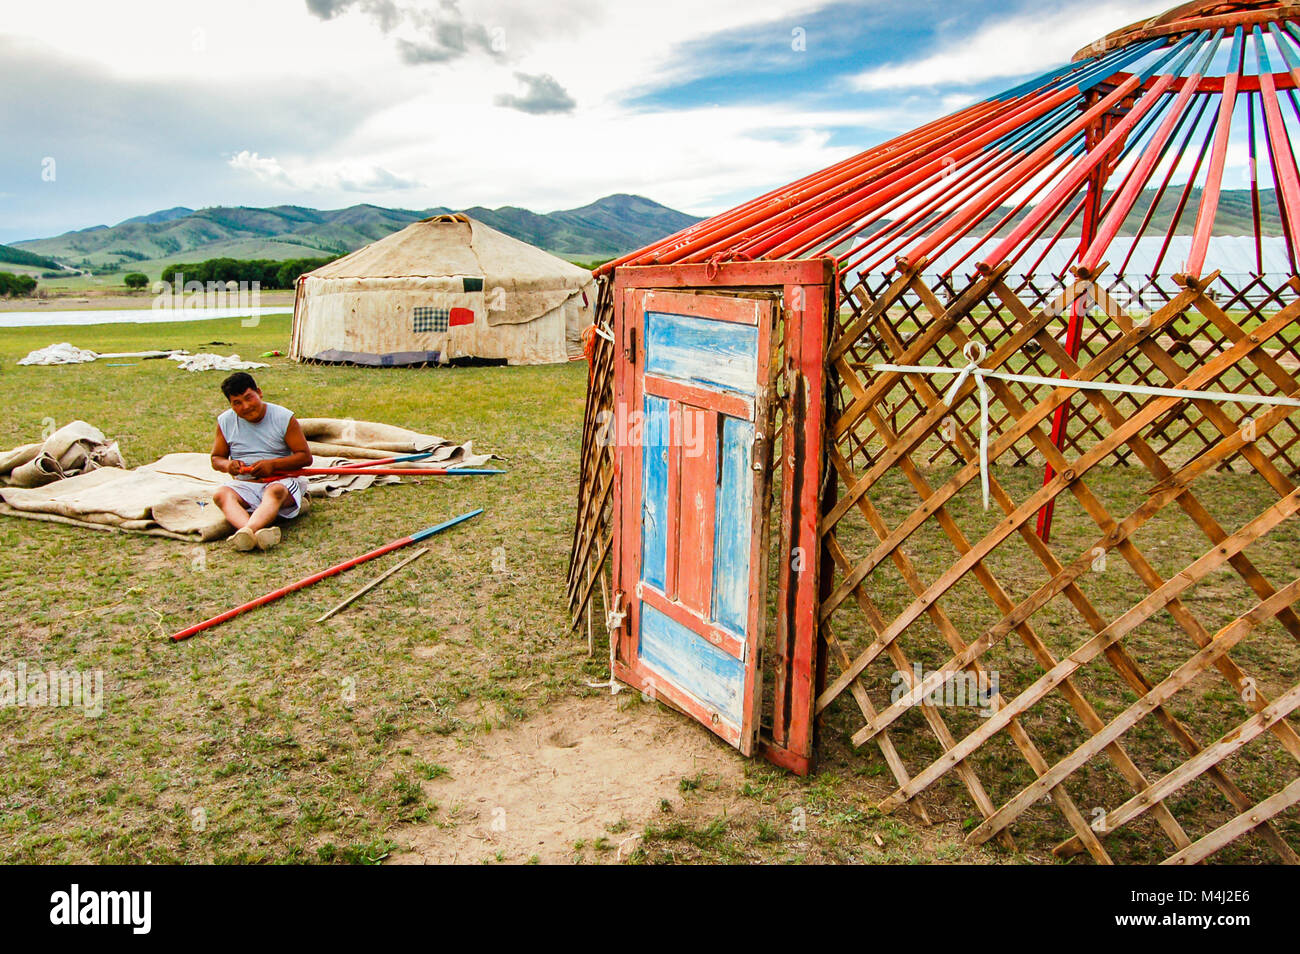 Khutag Ondor, Mongolia centrale - Luglio 17, 2010: Nomad costruisce una yurt, chiamato ger, sulla centrale di steppa mongola vicino a Khutag Ondor village Foto Stock